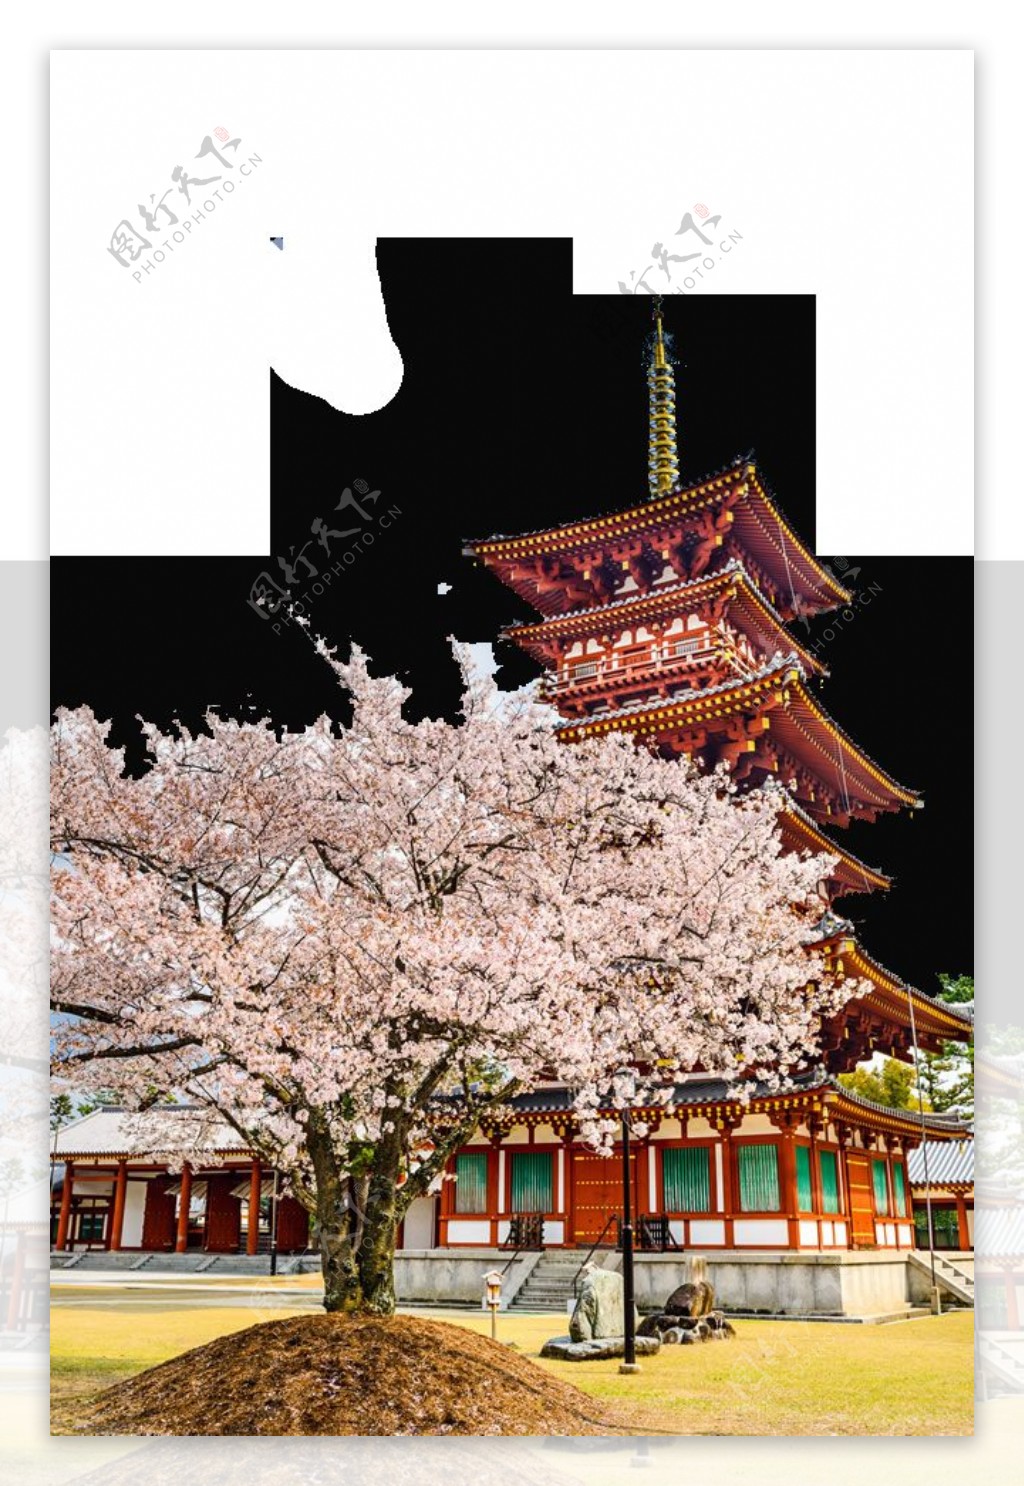 简约清新橙红色楼塔日本旅游装饰元素